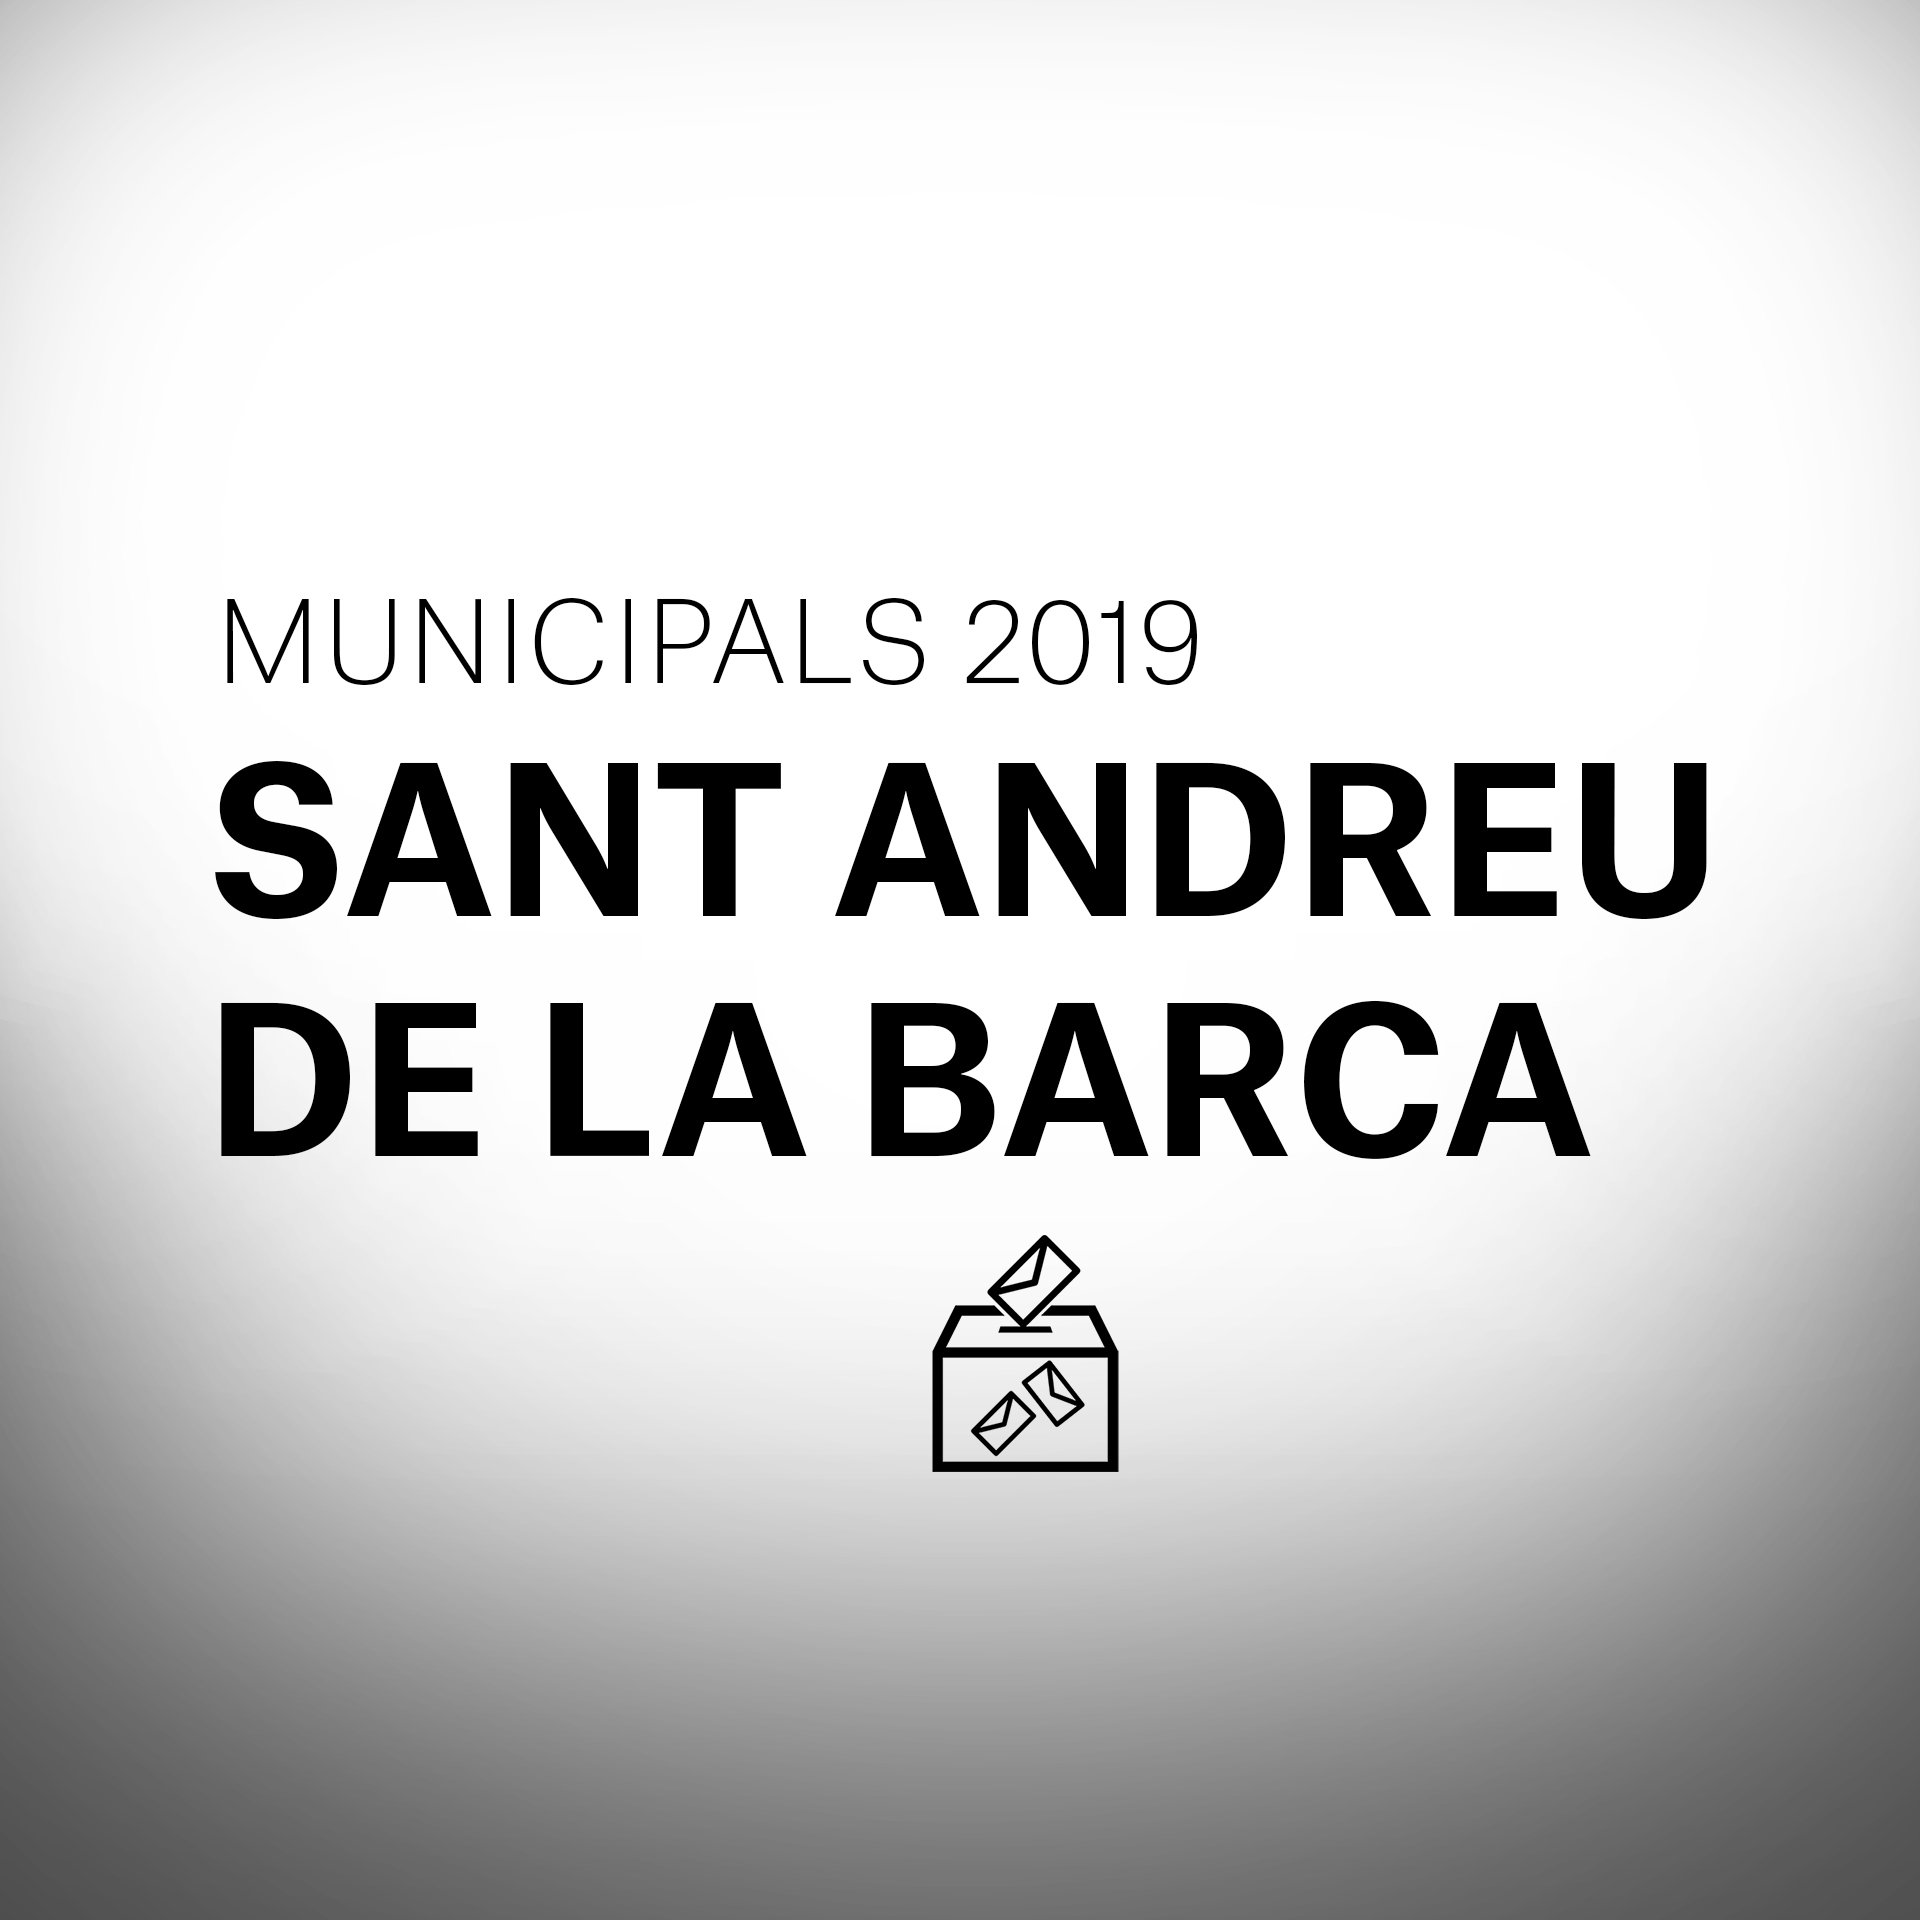 Què passarà a les eleccions municipals a Sant Andreu de la Barca?